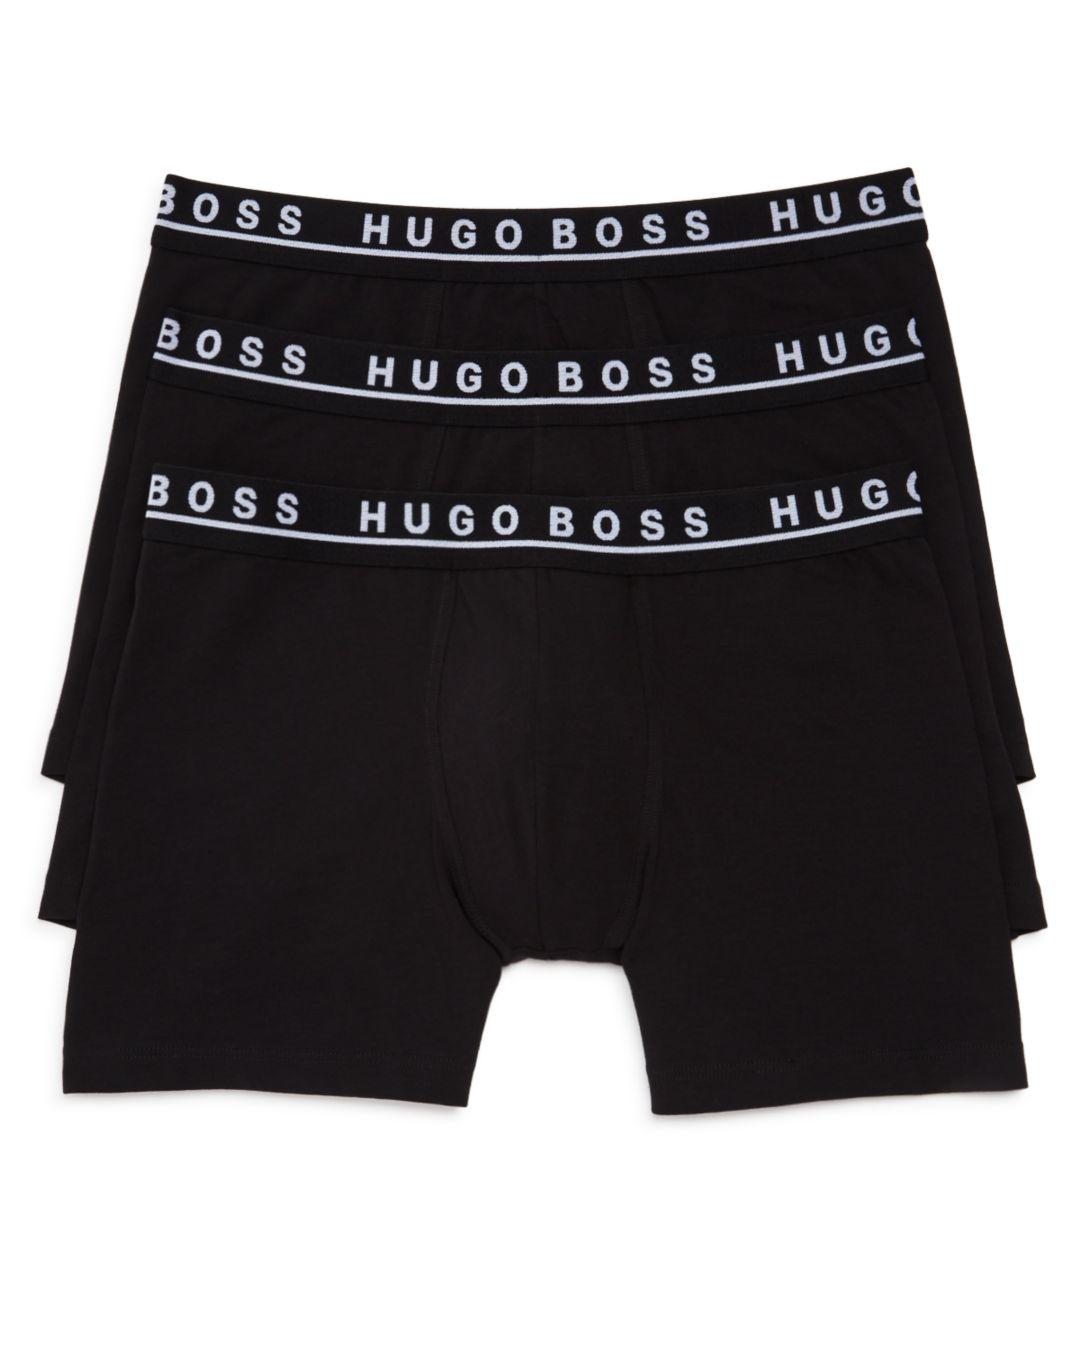 Hugo Boss Boxer Briefs Size Chart